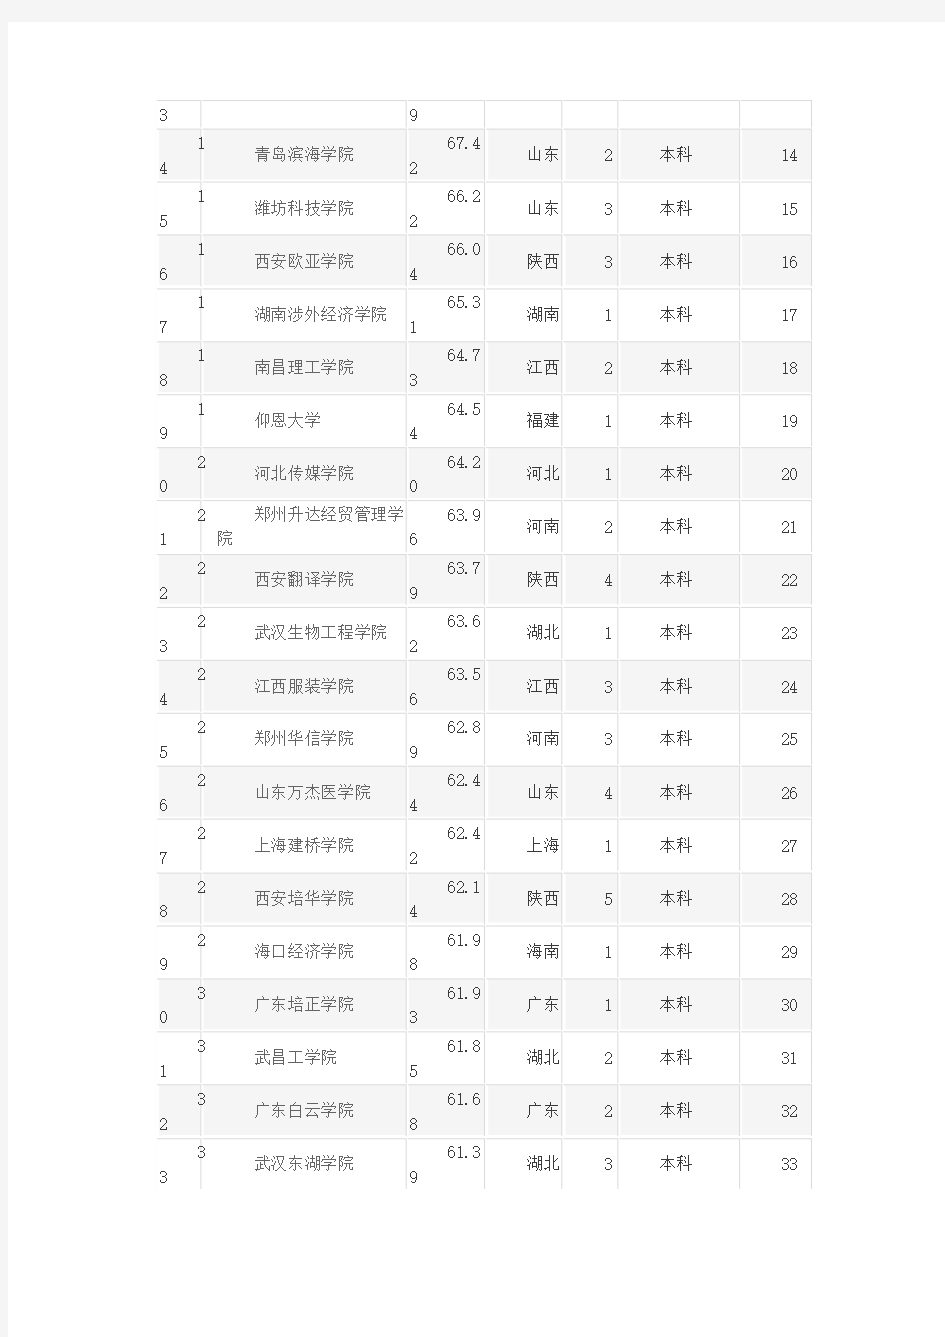 热烈祝贺重庆科创职业学院荣登2014年中国民办院校竞争力排行榜